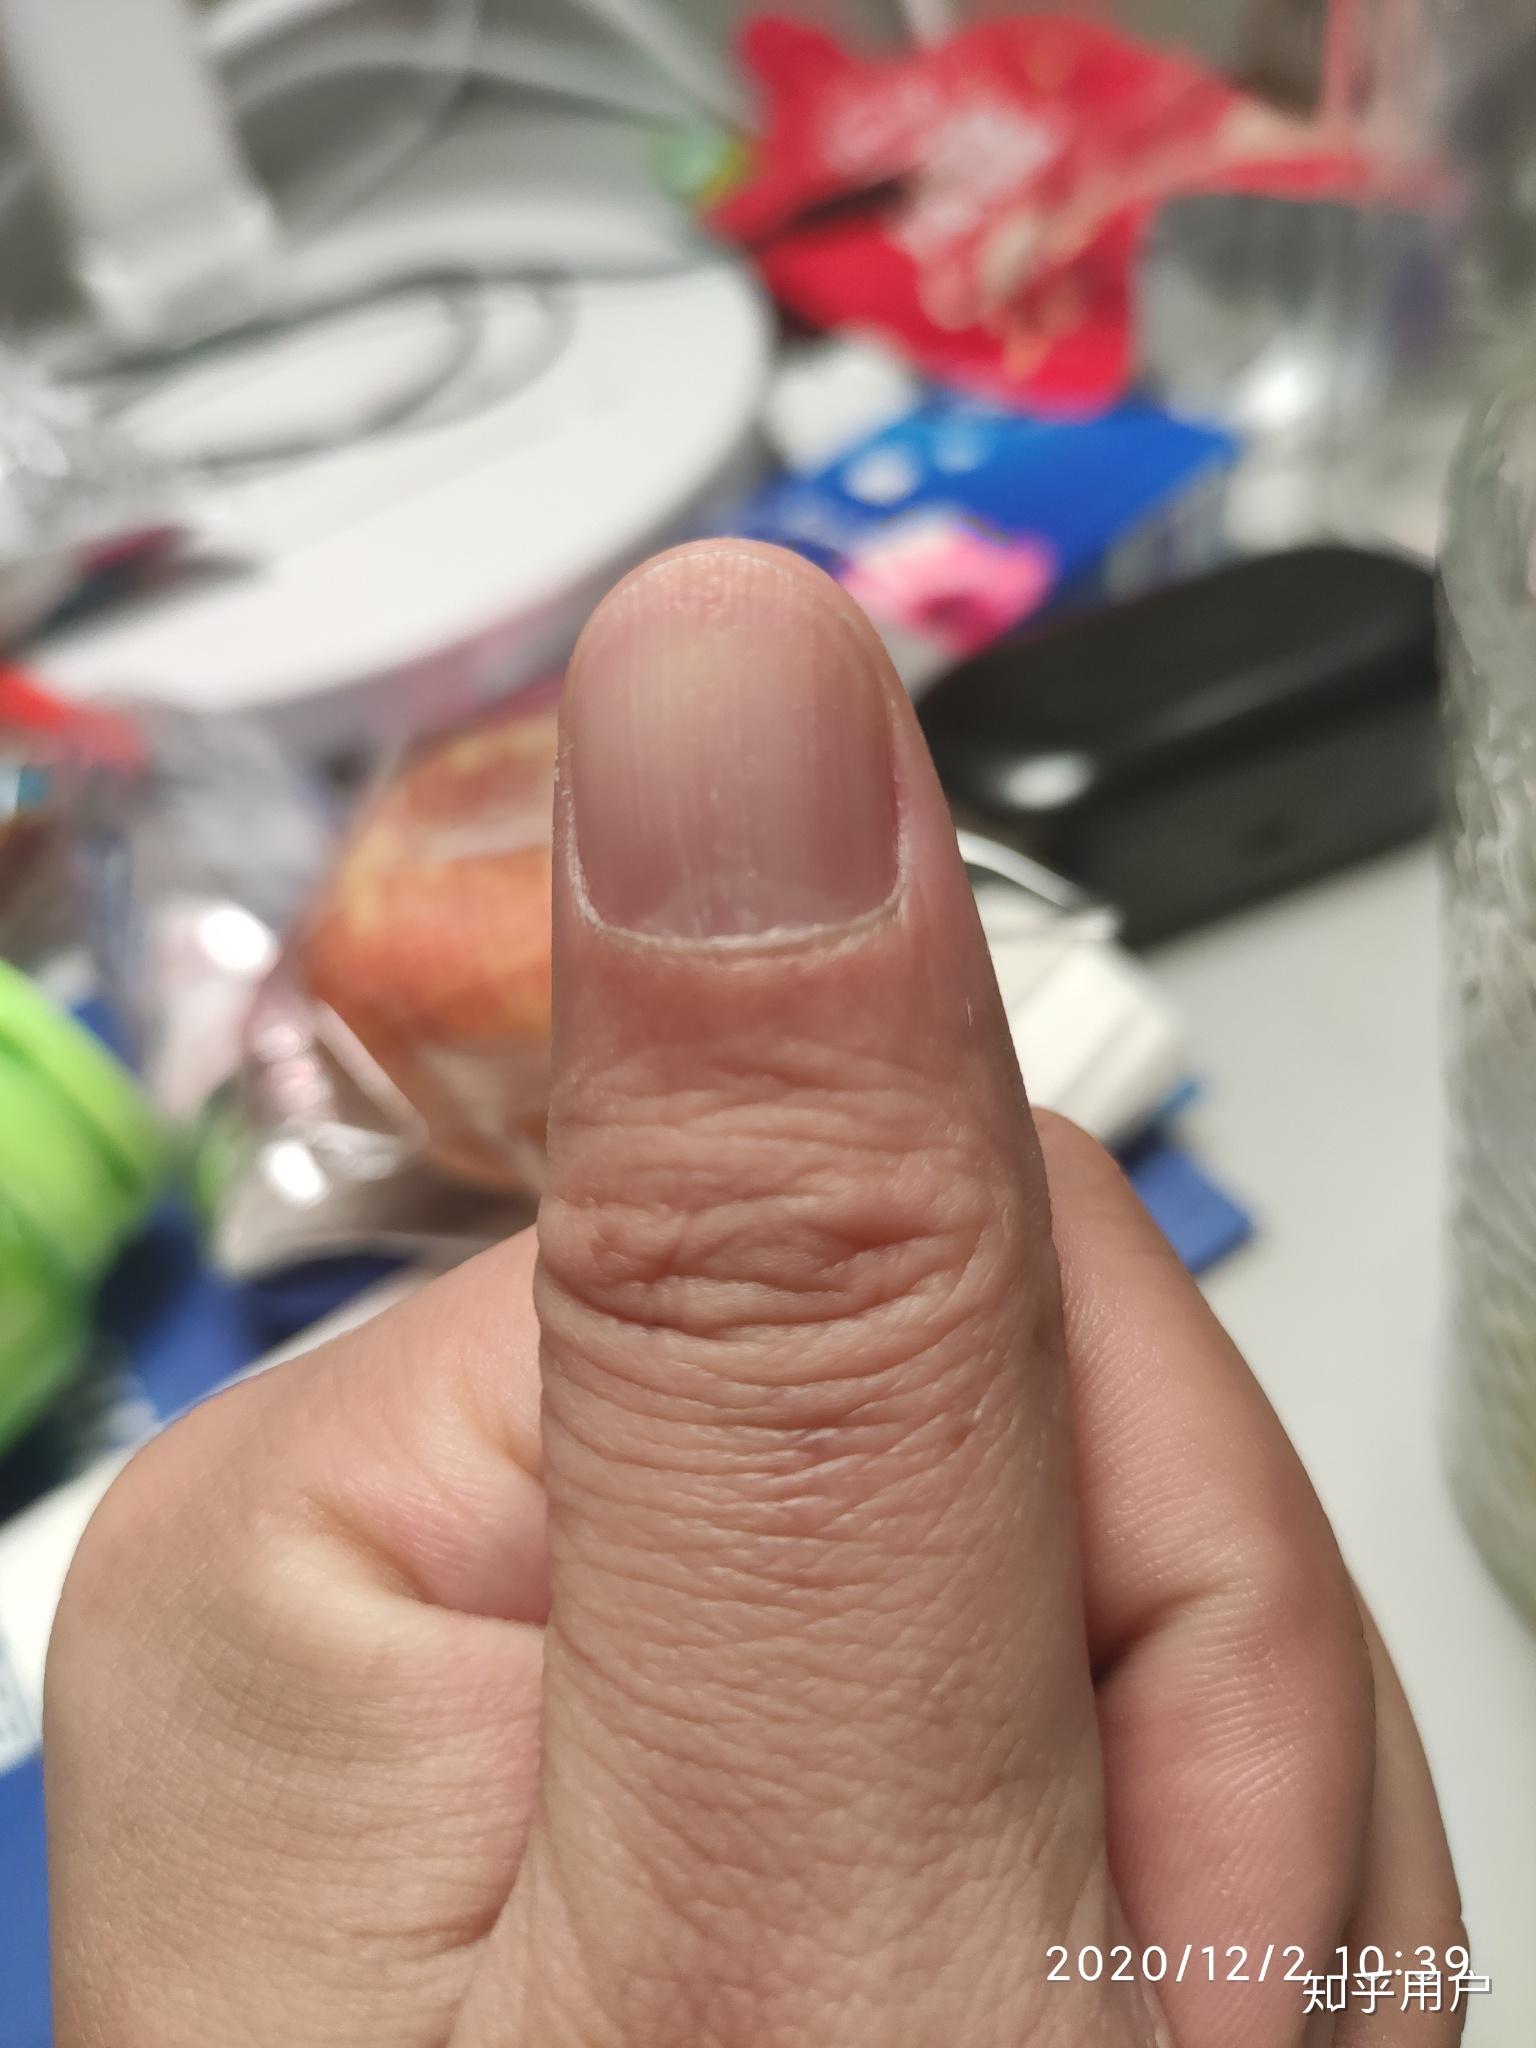 手指甲裂开了要怎么修复,治疗呢? 